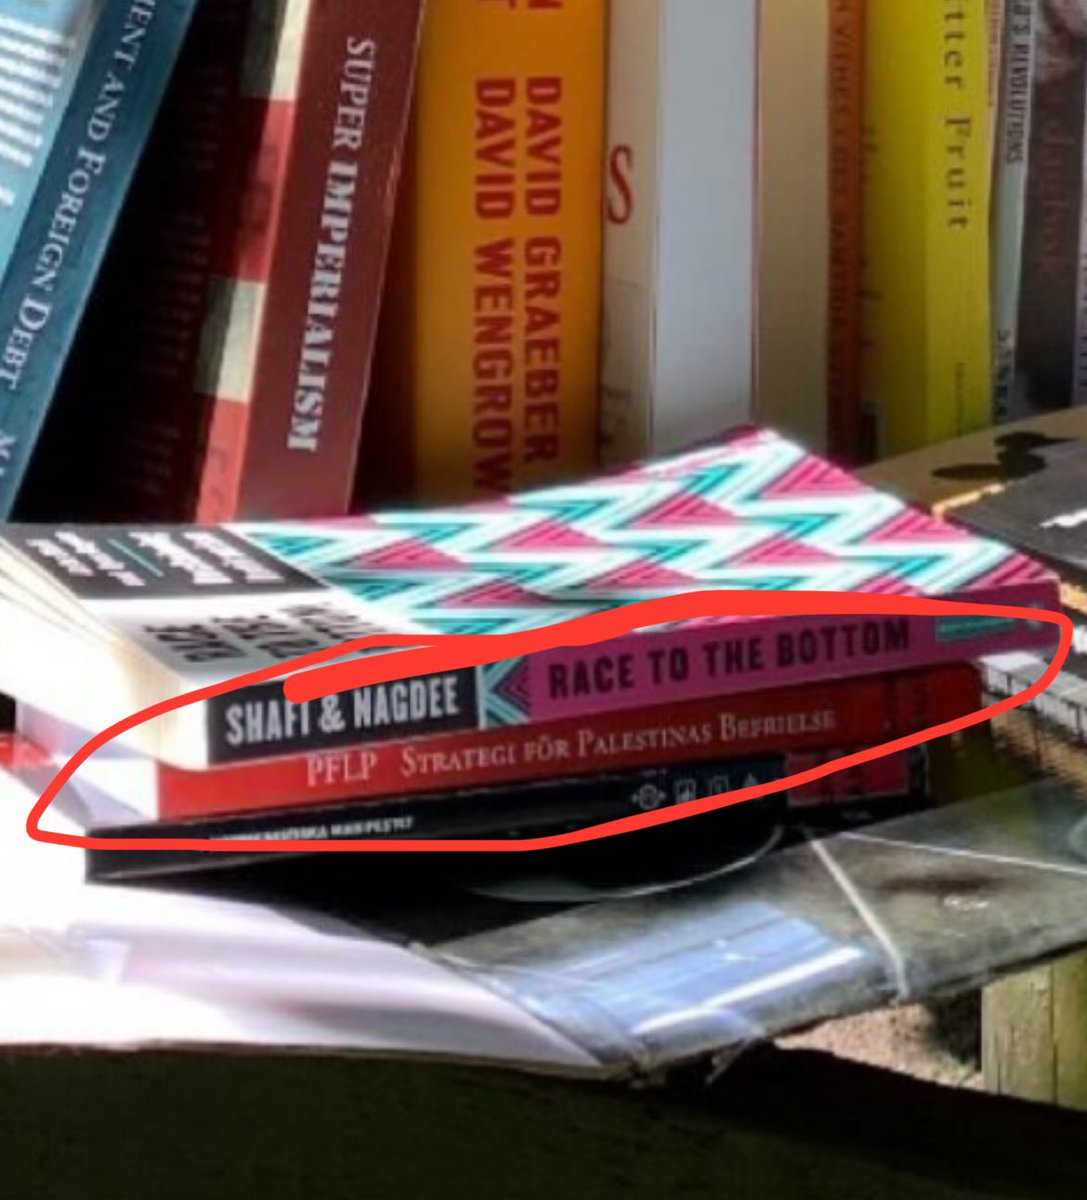 Lite skevt av campingaktivisterna i Lundagård att ha Anne Franks dagbok och terrorgruppen PFLP:s propaganda i sitt bibliotek döpt efter just en PFLP-ledare?